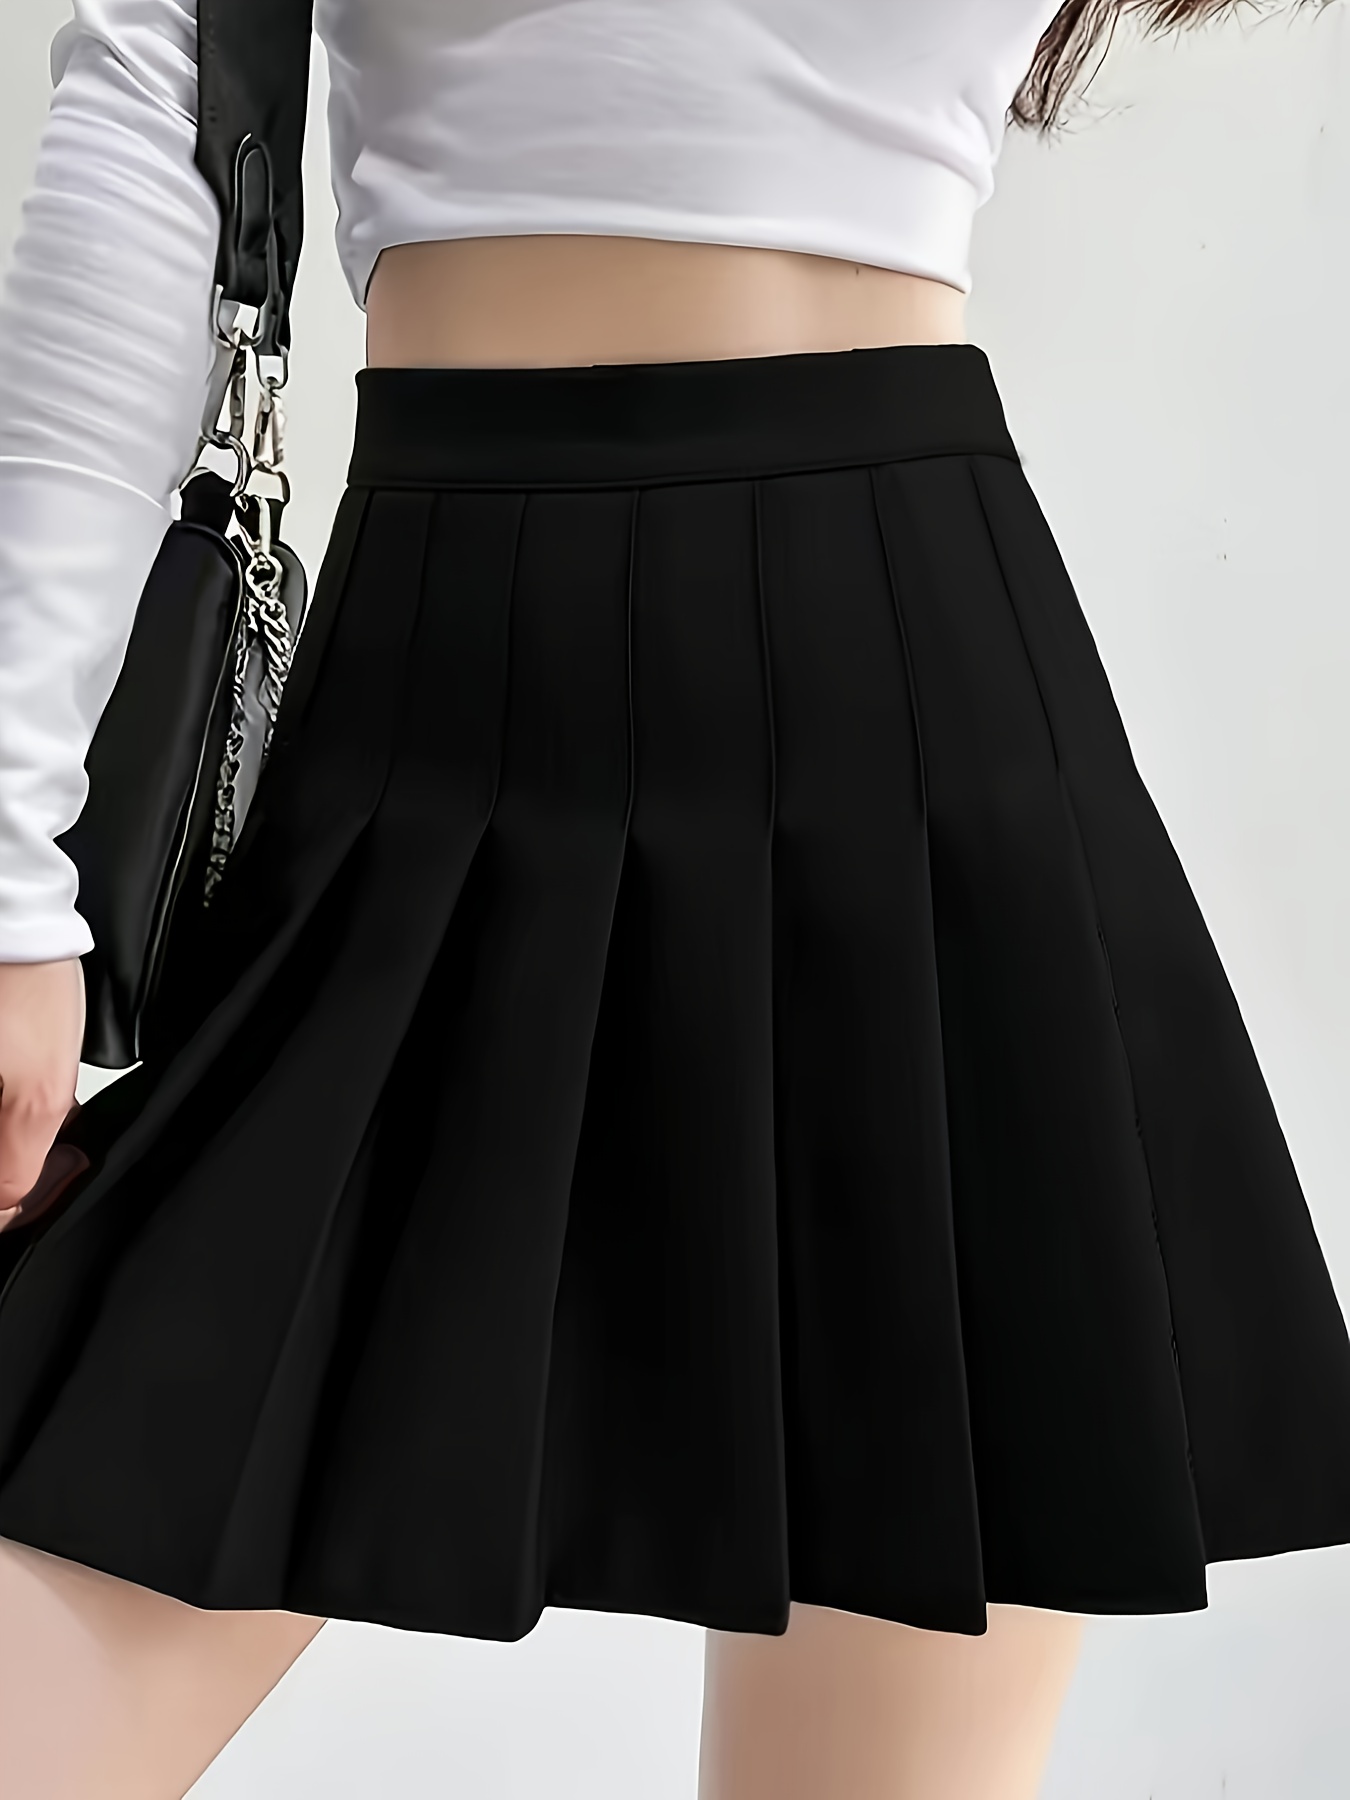 Trendy falda colegiala sexy en varios estilos únicos - Alibaba.com